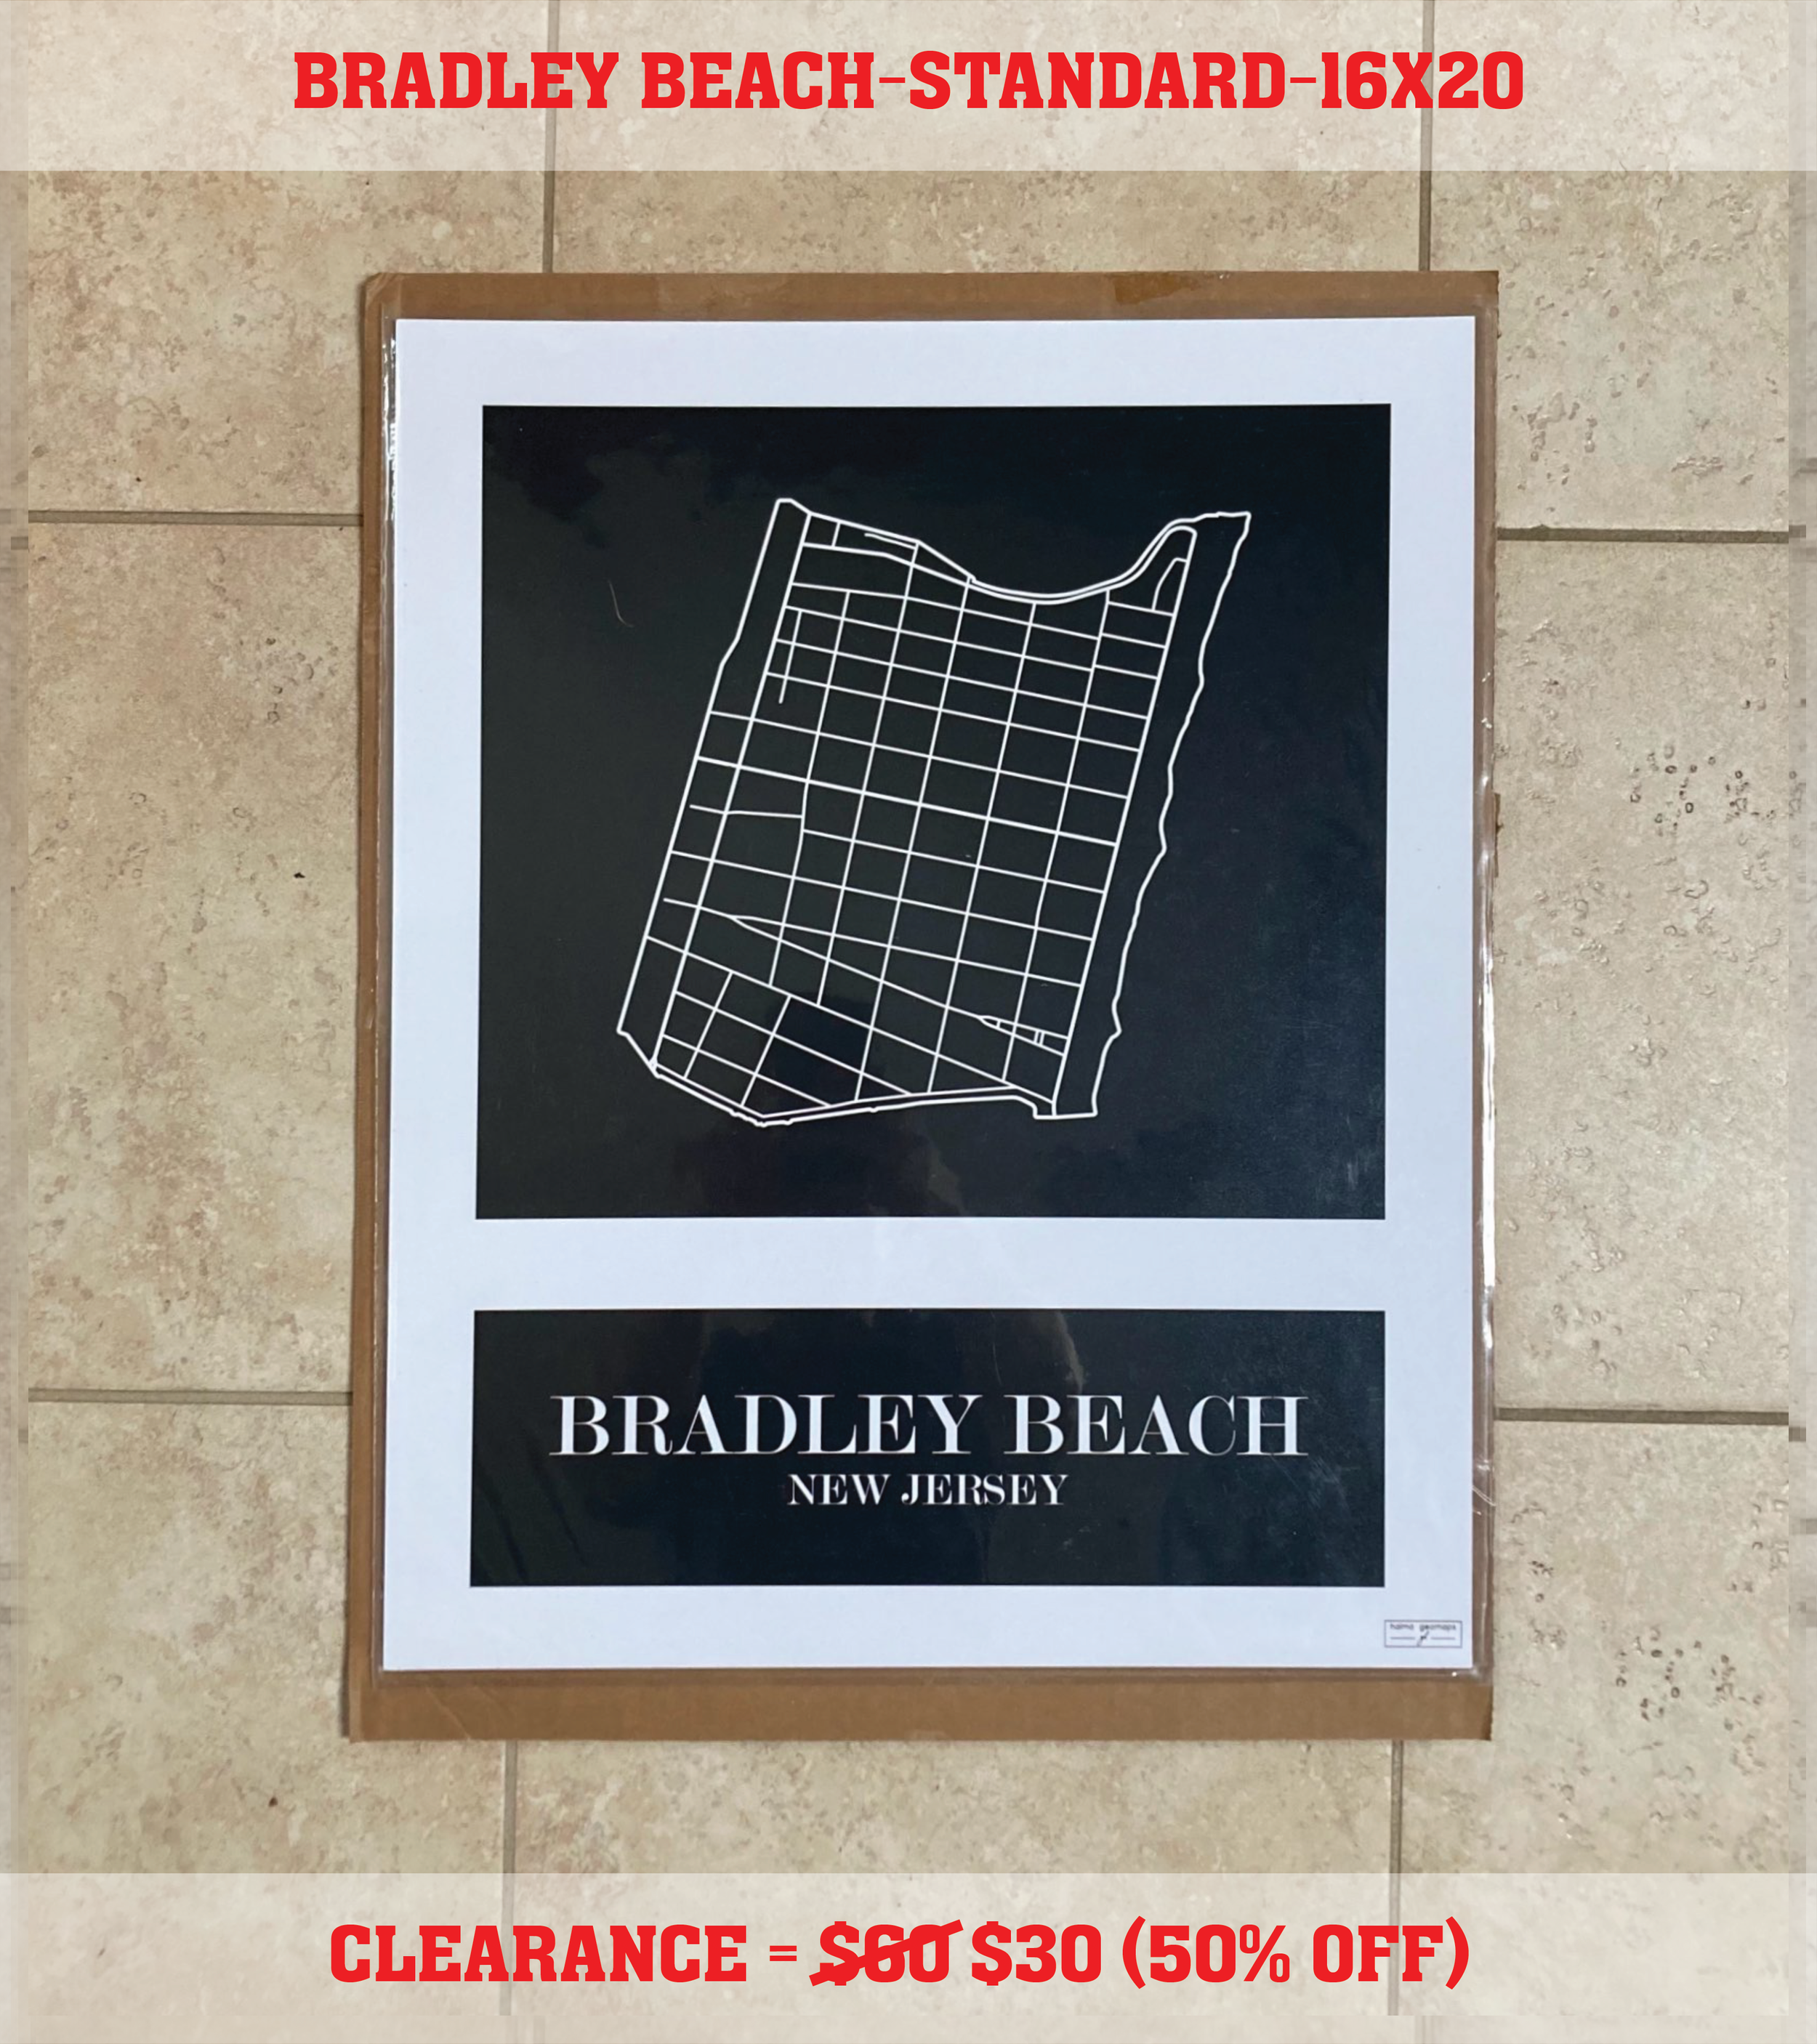 Bradley Beach (16x20) Standard